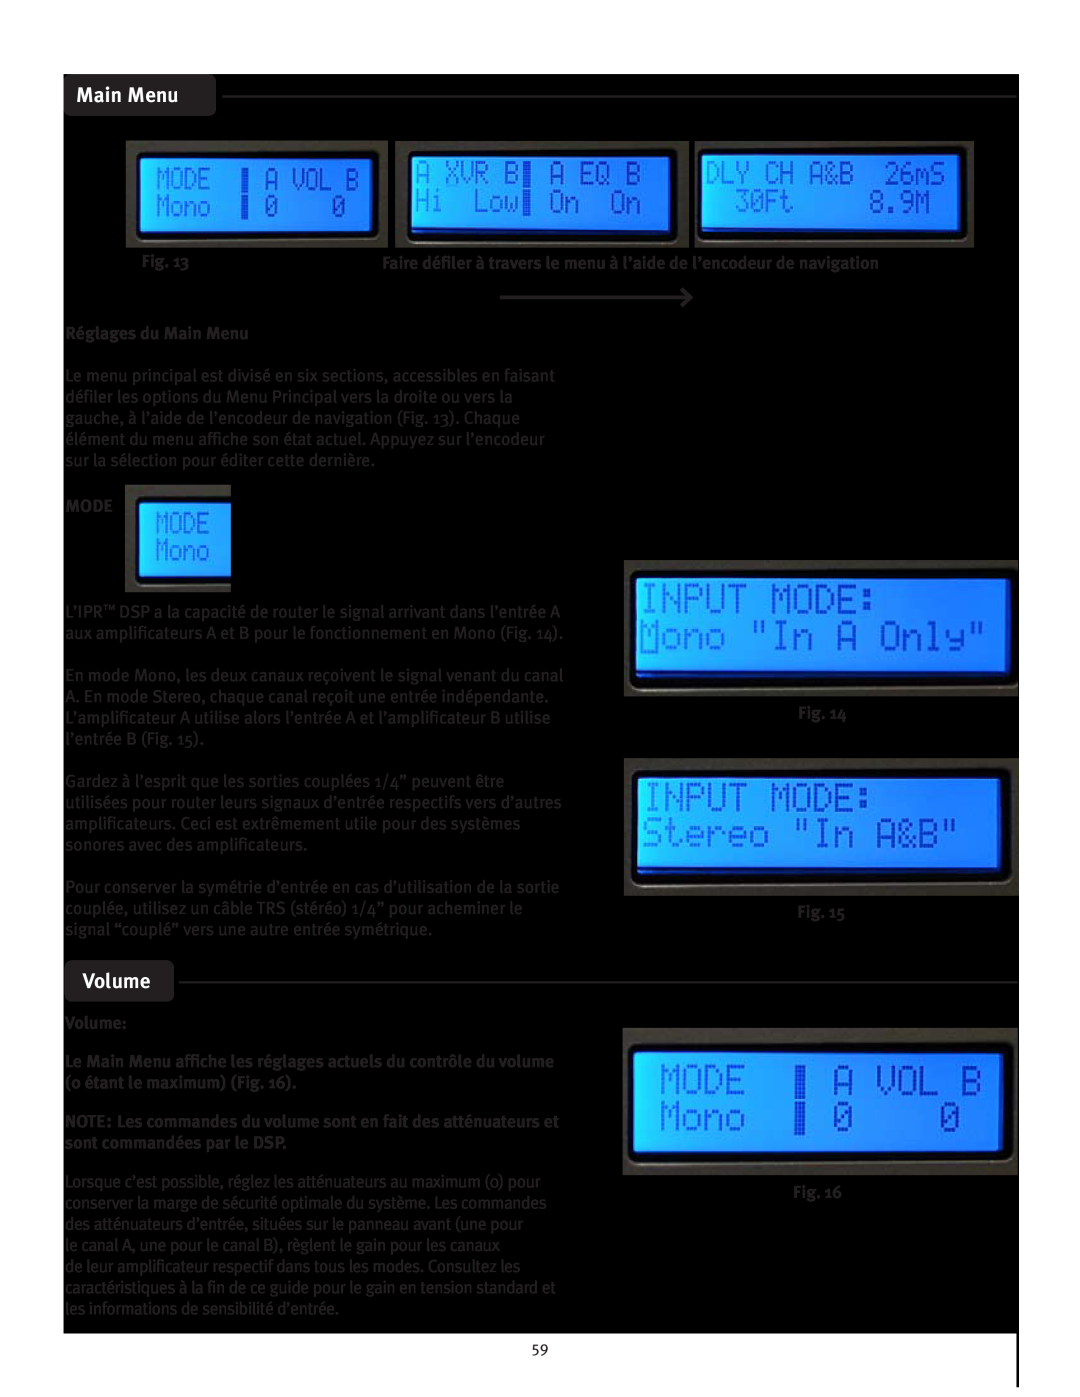 Peavey IPR 1600, IPR 3000, IPR 6000, IPR 4500 manual Volume, Réglages du Main Menu, Mode 